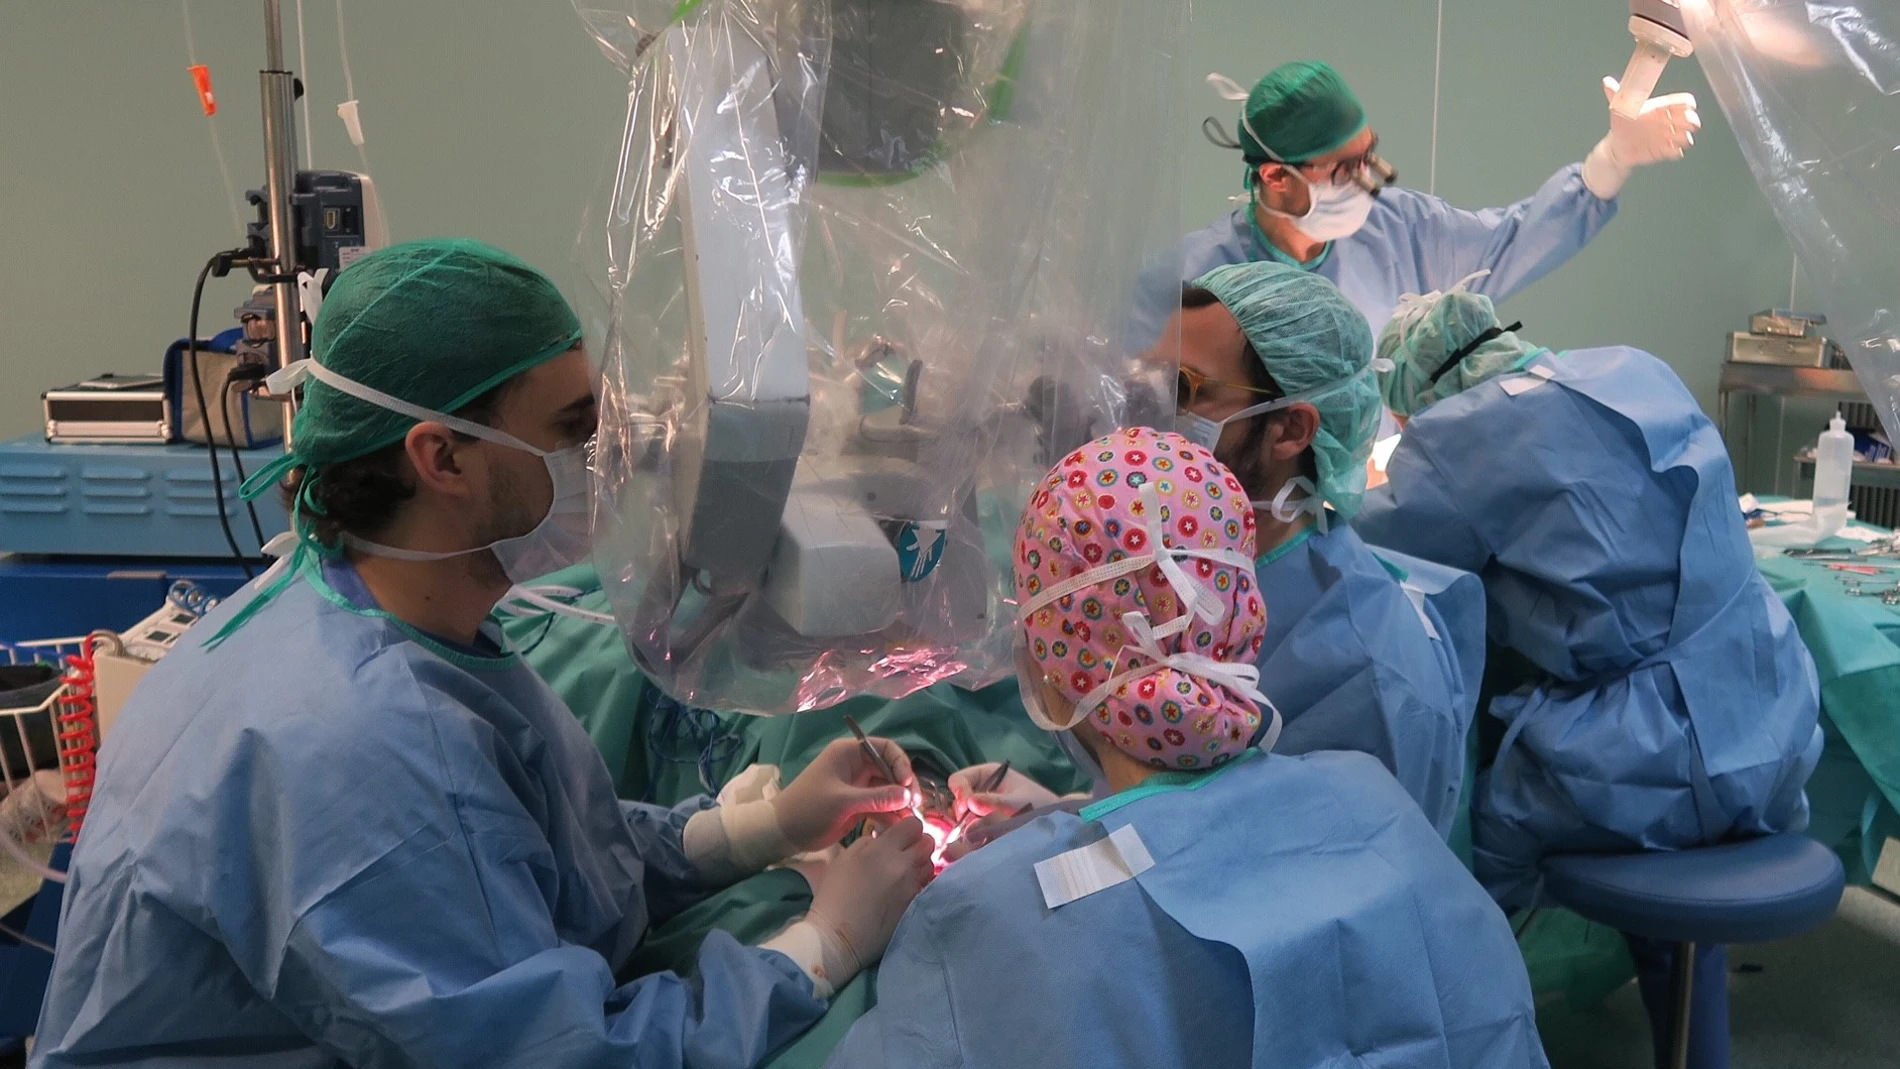 La técnica consistió en la artrodesis definitiva de la articulación interfalángica próxima y la realización de suturas microquirúrgicas / Foto: La Razón